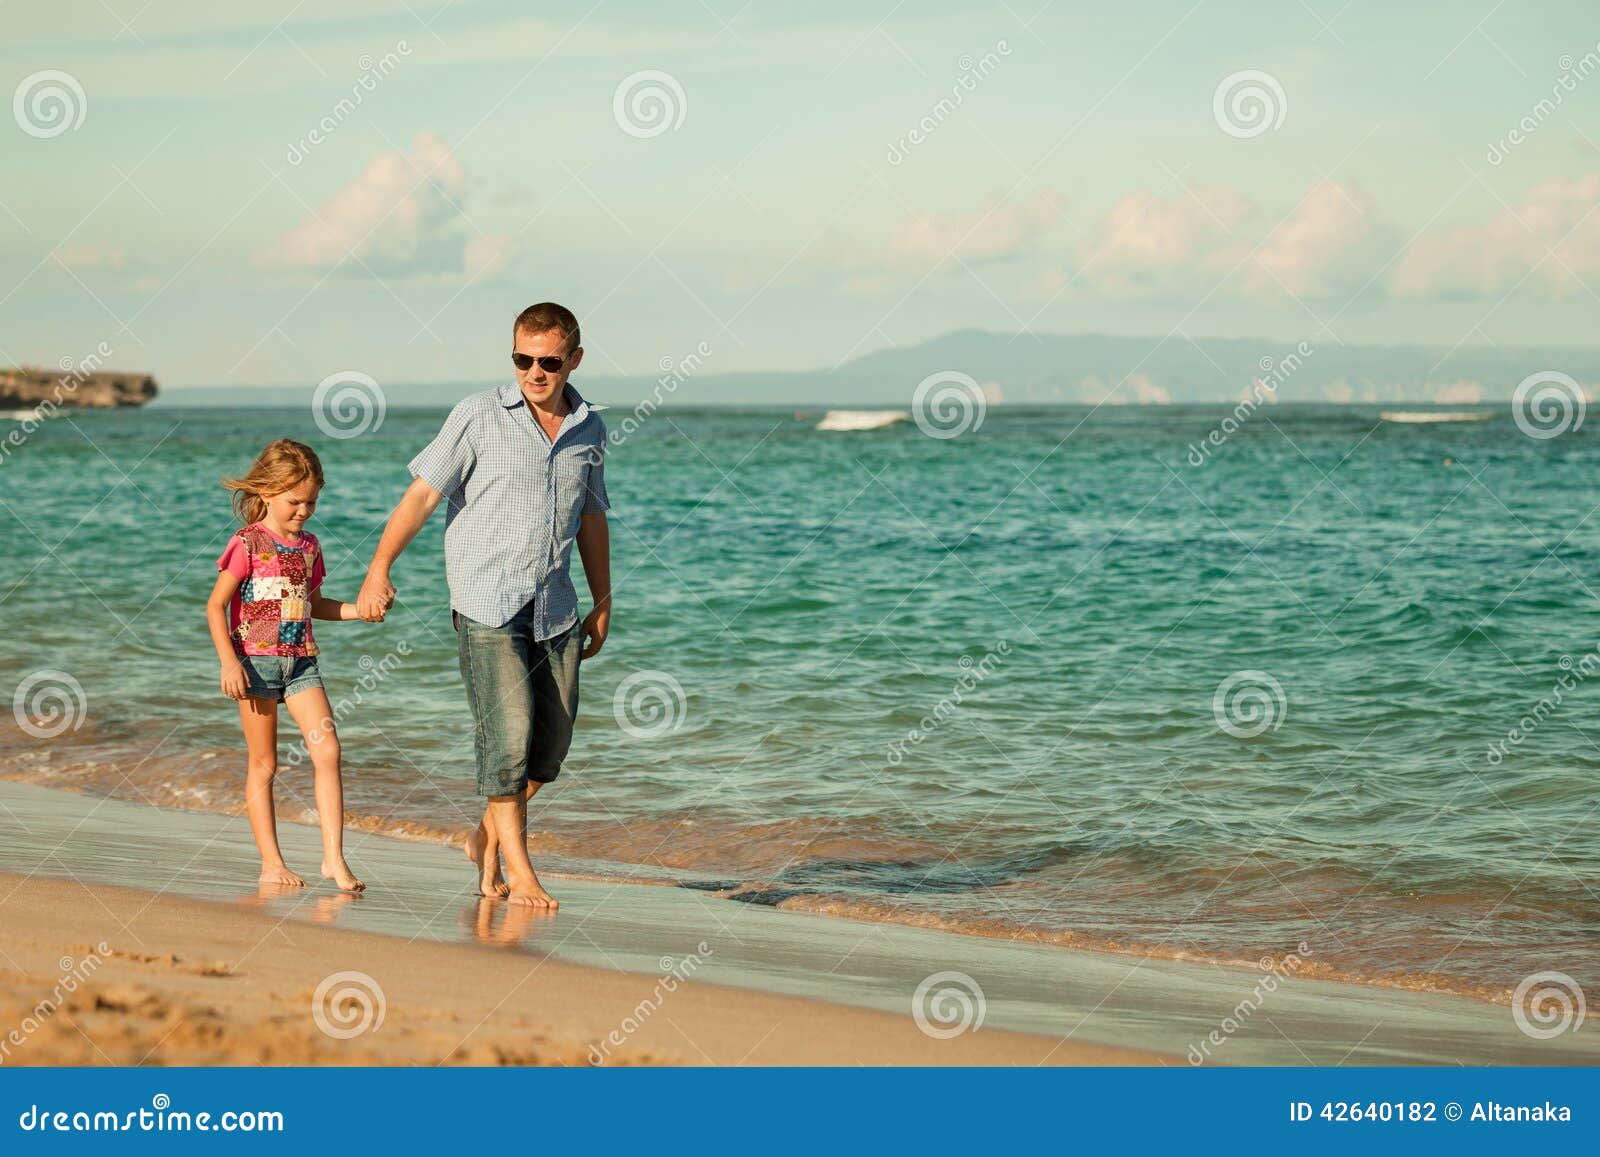 Дочка папа на пляже. Фотосессия отец и дочь на пляже. Папа с дочкой на Крымском побережье. Фото папы с дочками на пляже.